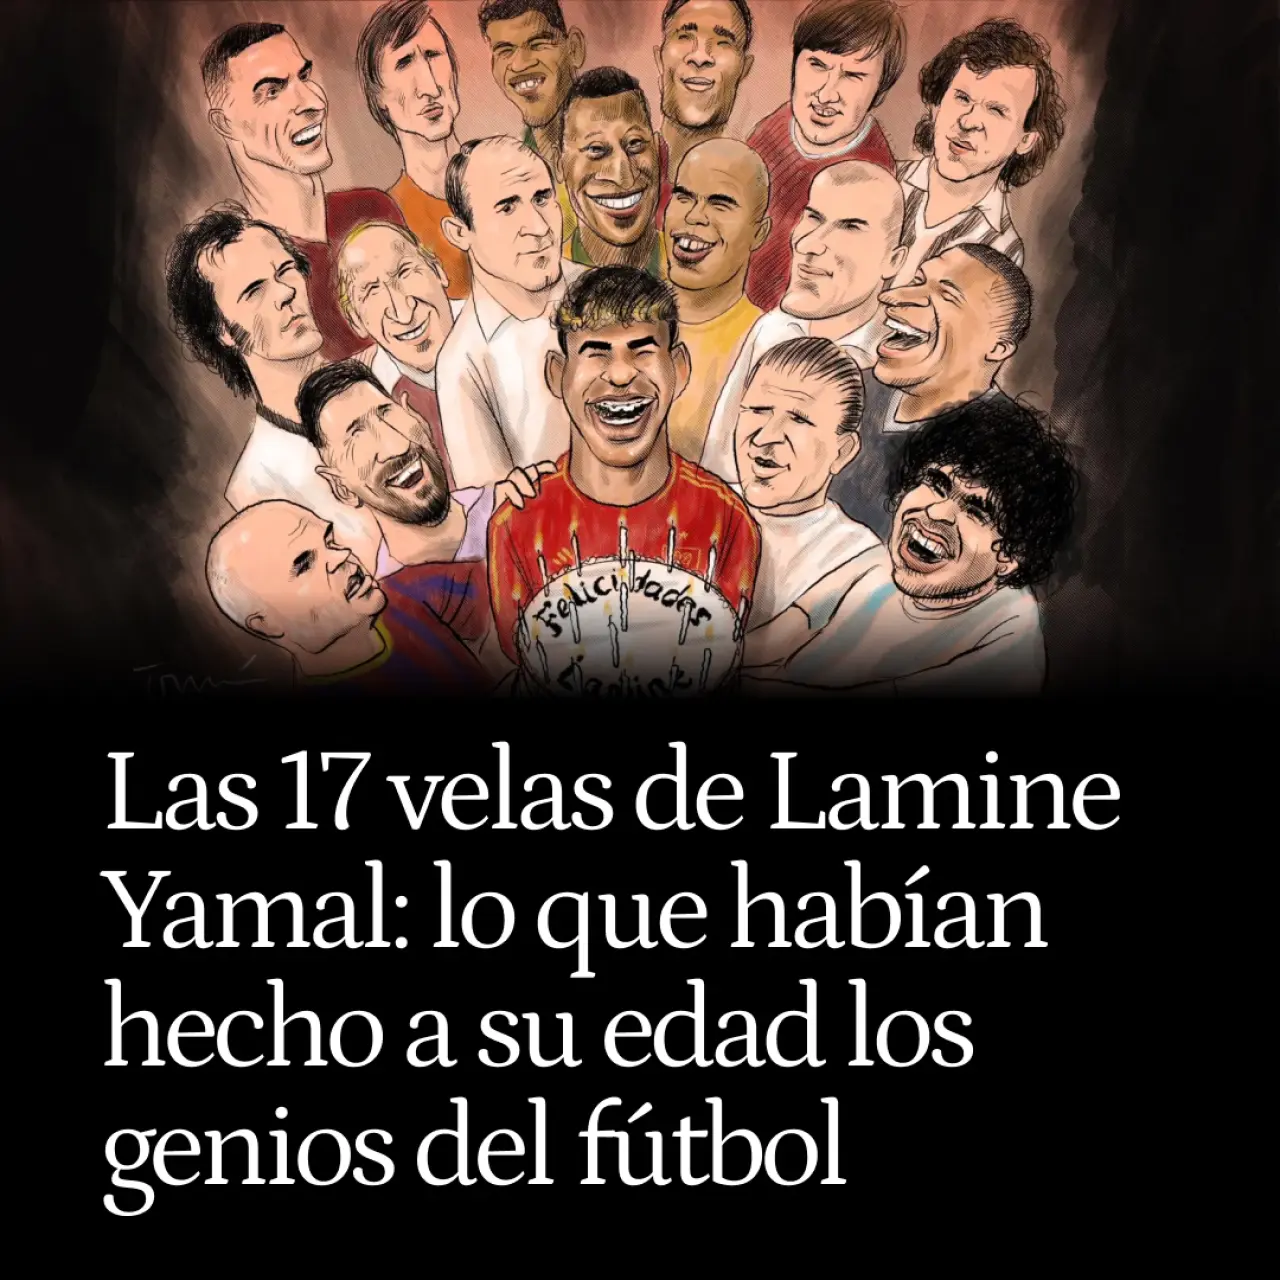 Las 17 velas de Lamine Yamal: lo que habían hecho a su edad los grandes genios del fútbol